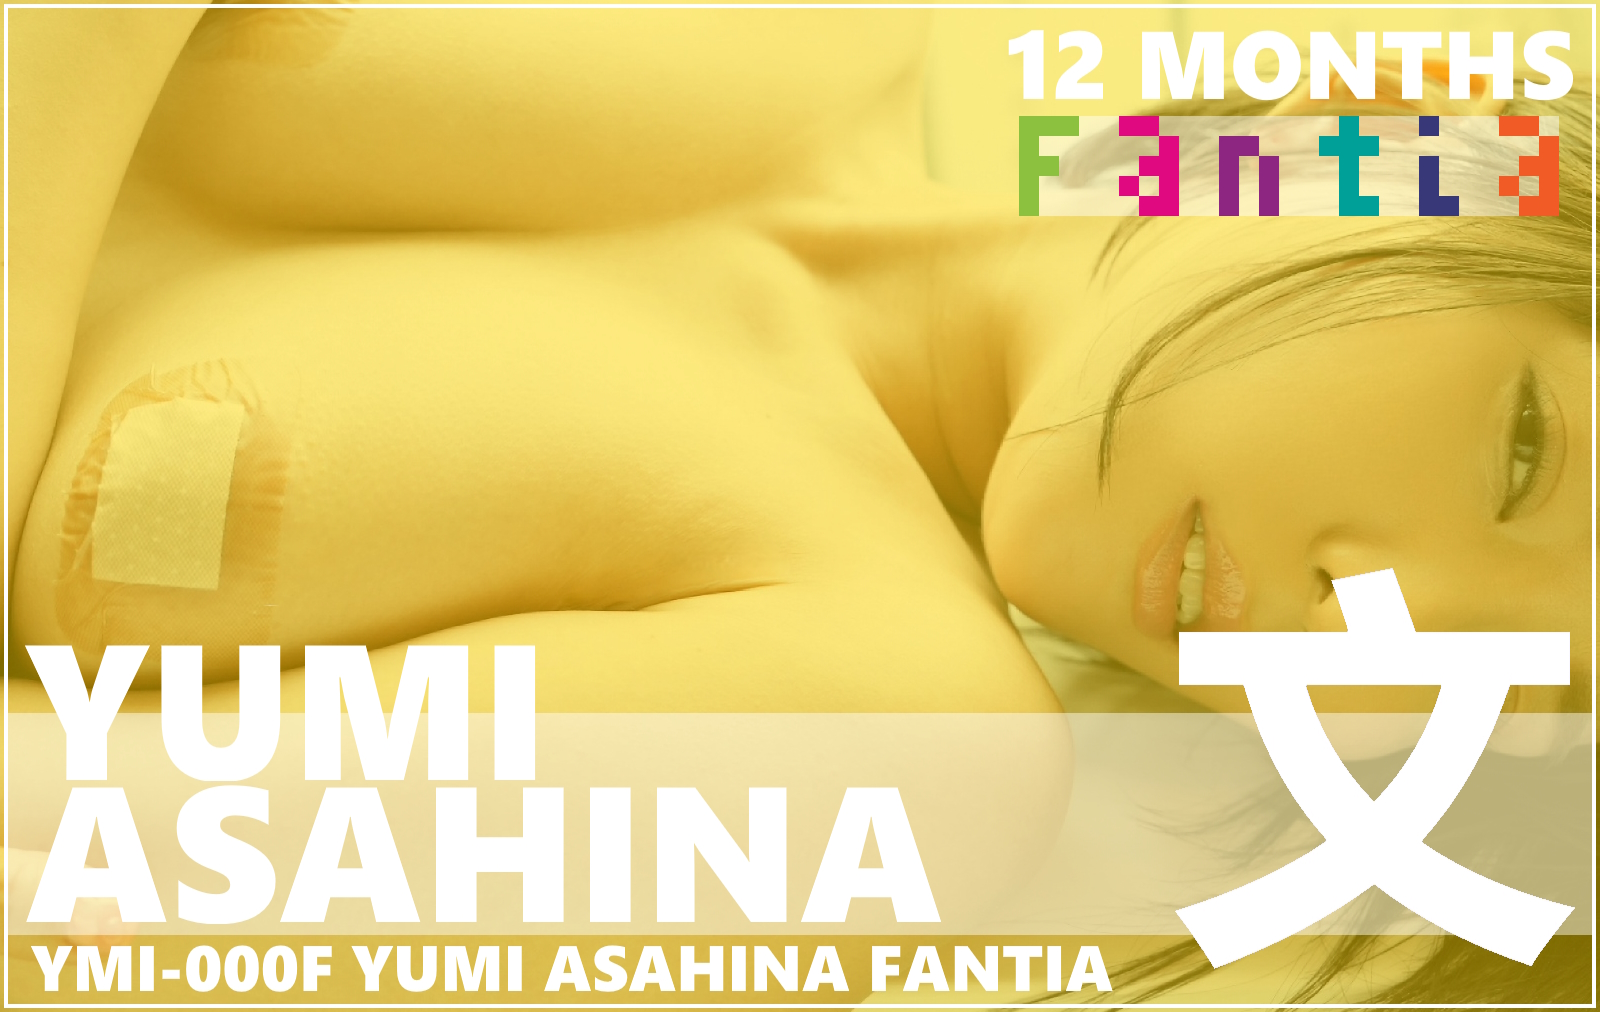 YMI-000F Yumi Asahina Fantia Club (12 Months)